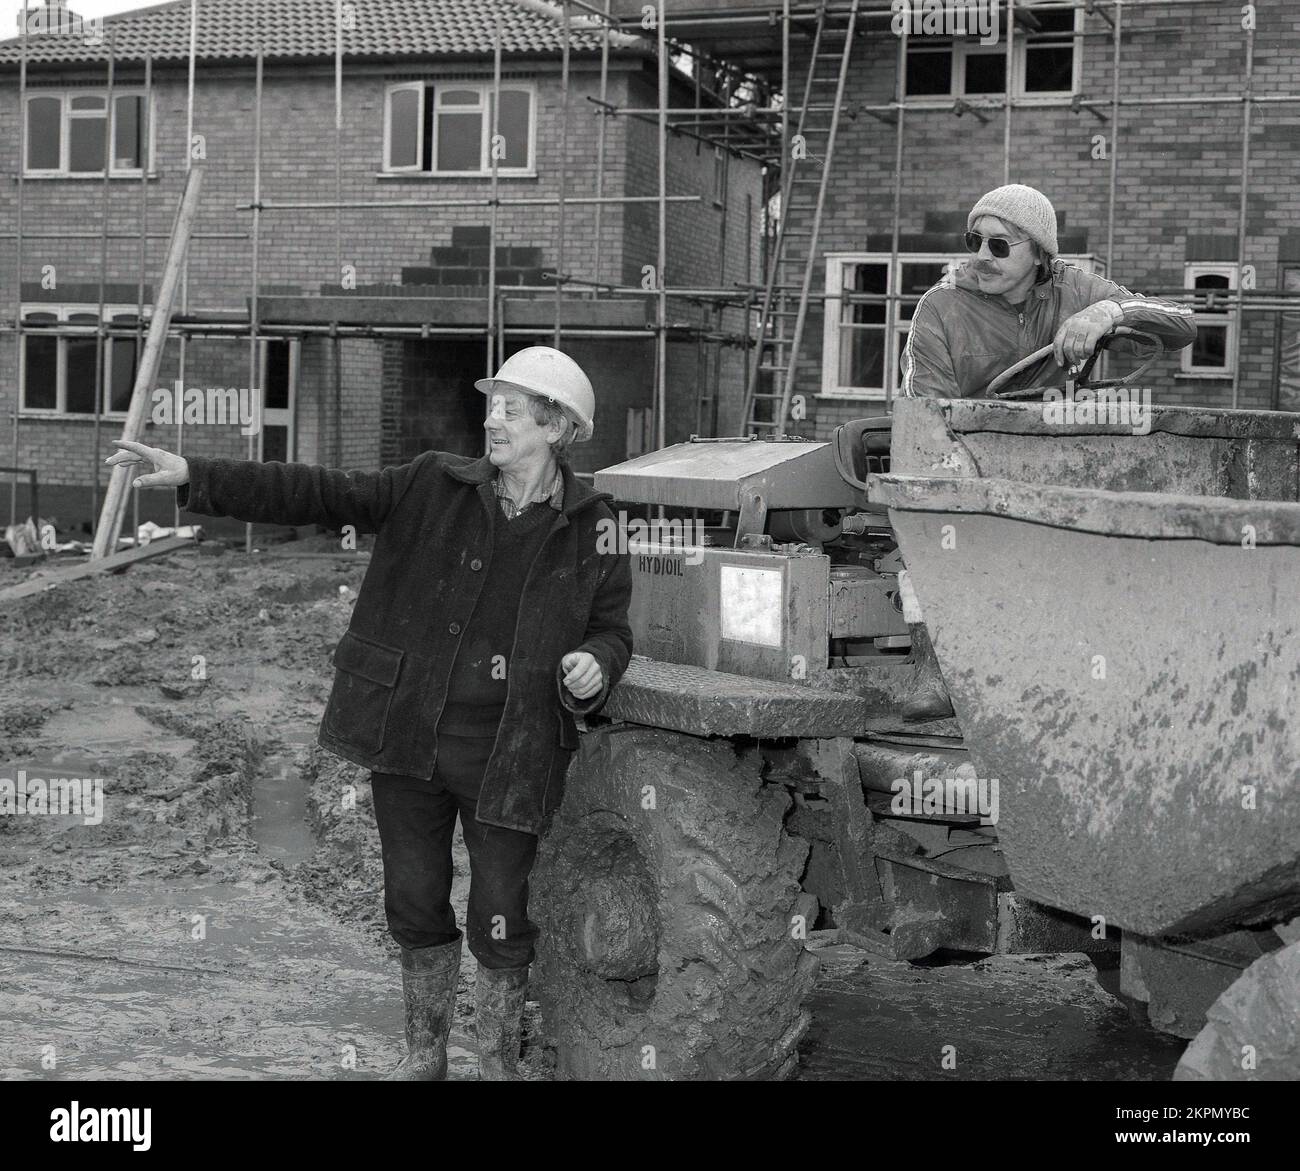 1980s, due costruttori in cantiere, in chat, uno seduto su un carrello di carico pesante, Inghilterra, Regno Unito. vuoi spostare un salto?? Foto Stock